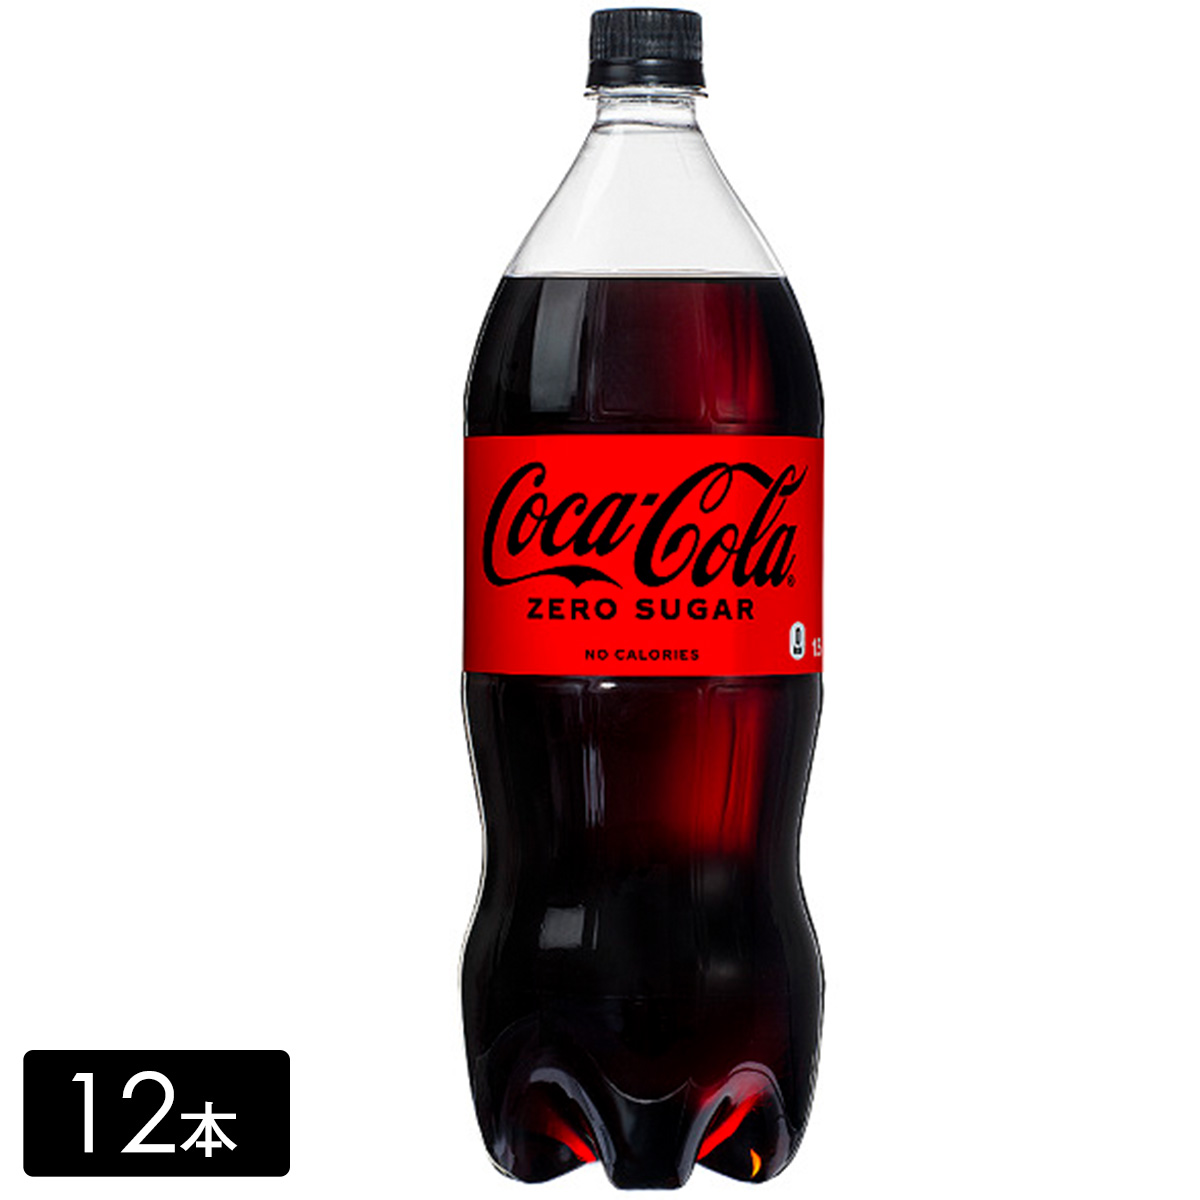 コカ・コーラ ゼロ 1.5L×12本(6本×2箱) カロリーゼロ 保存料ゼロ 合成香料ゼロ 炭酸飲料 コカコーラ ペットボトル ケース売り まとめ買い